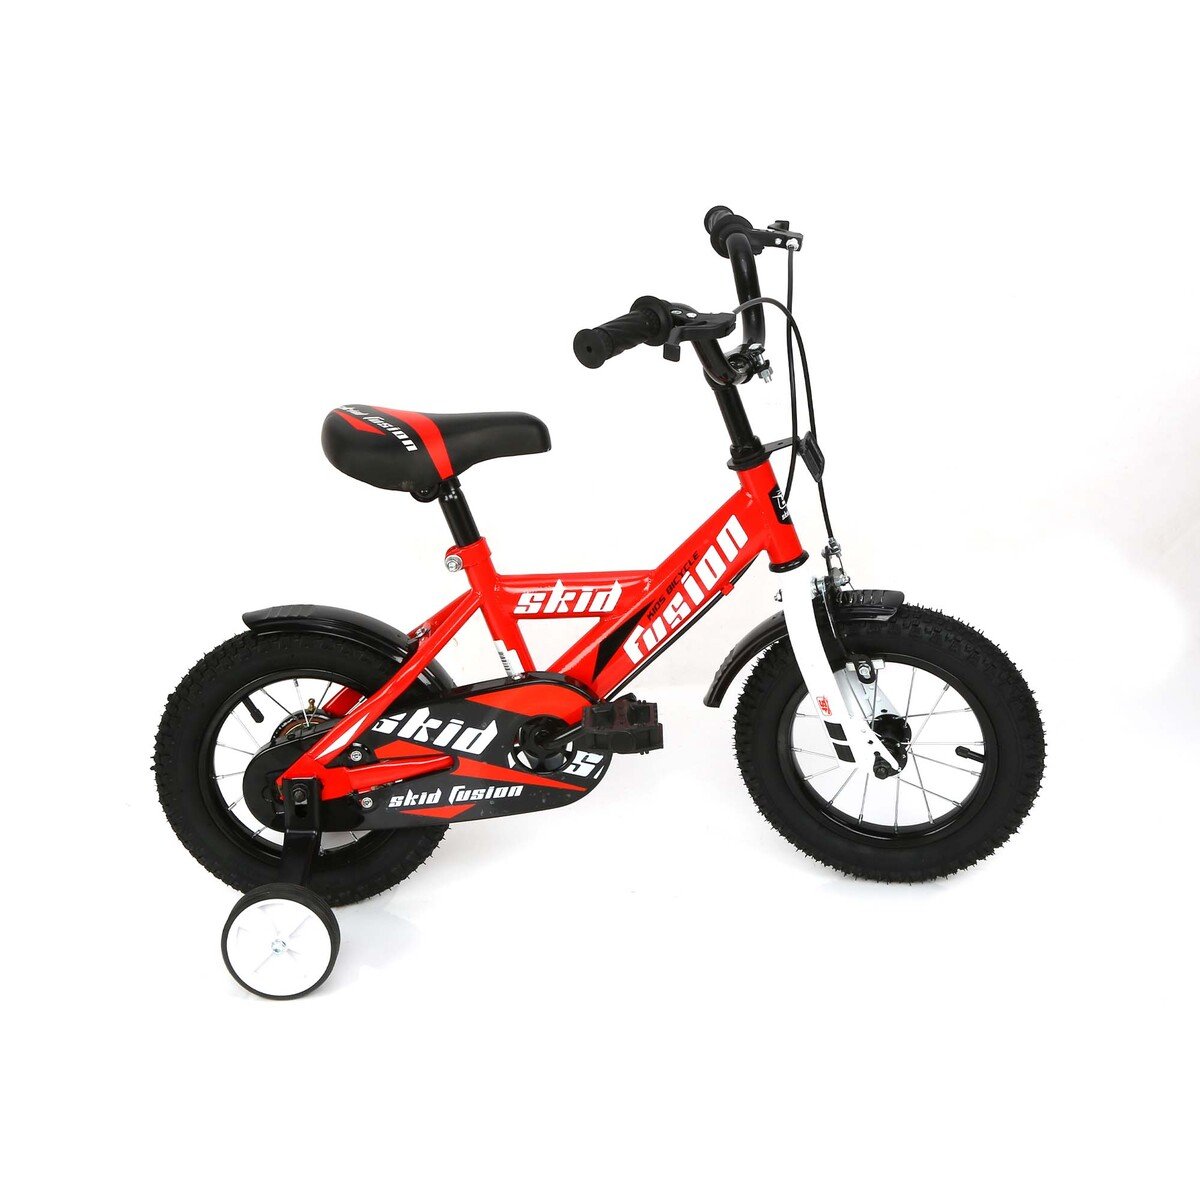 سكيد فيوجن دراجة أطفال 12 بوصة KX10-12 لون أحمر